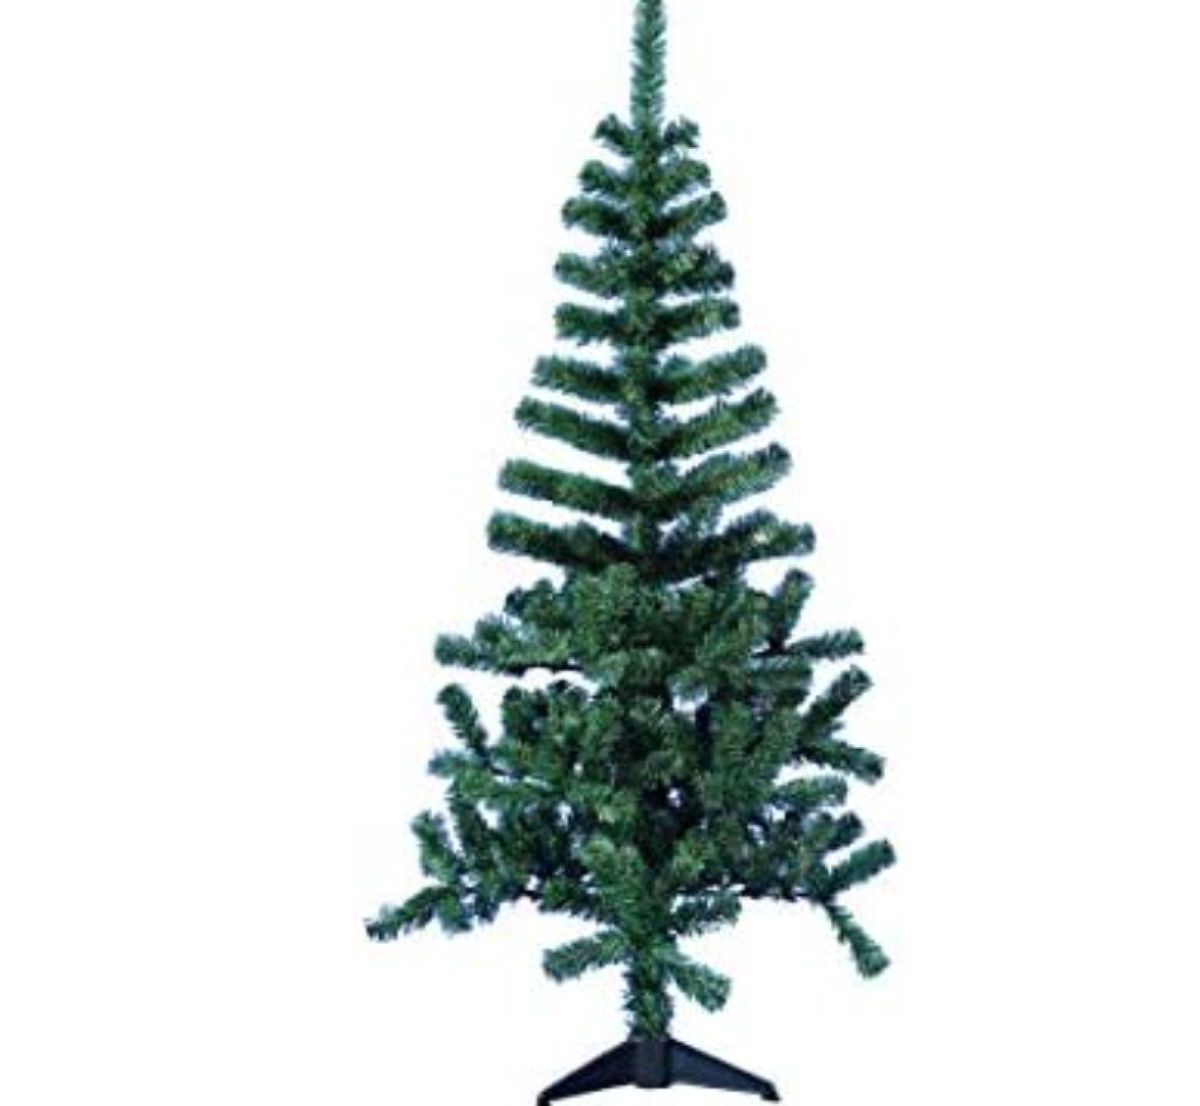 Árvore de Natal 1 Metro e Meio | Item de Decoração Usado 80141413 | enjoei